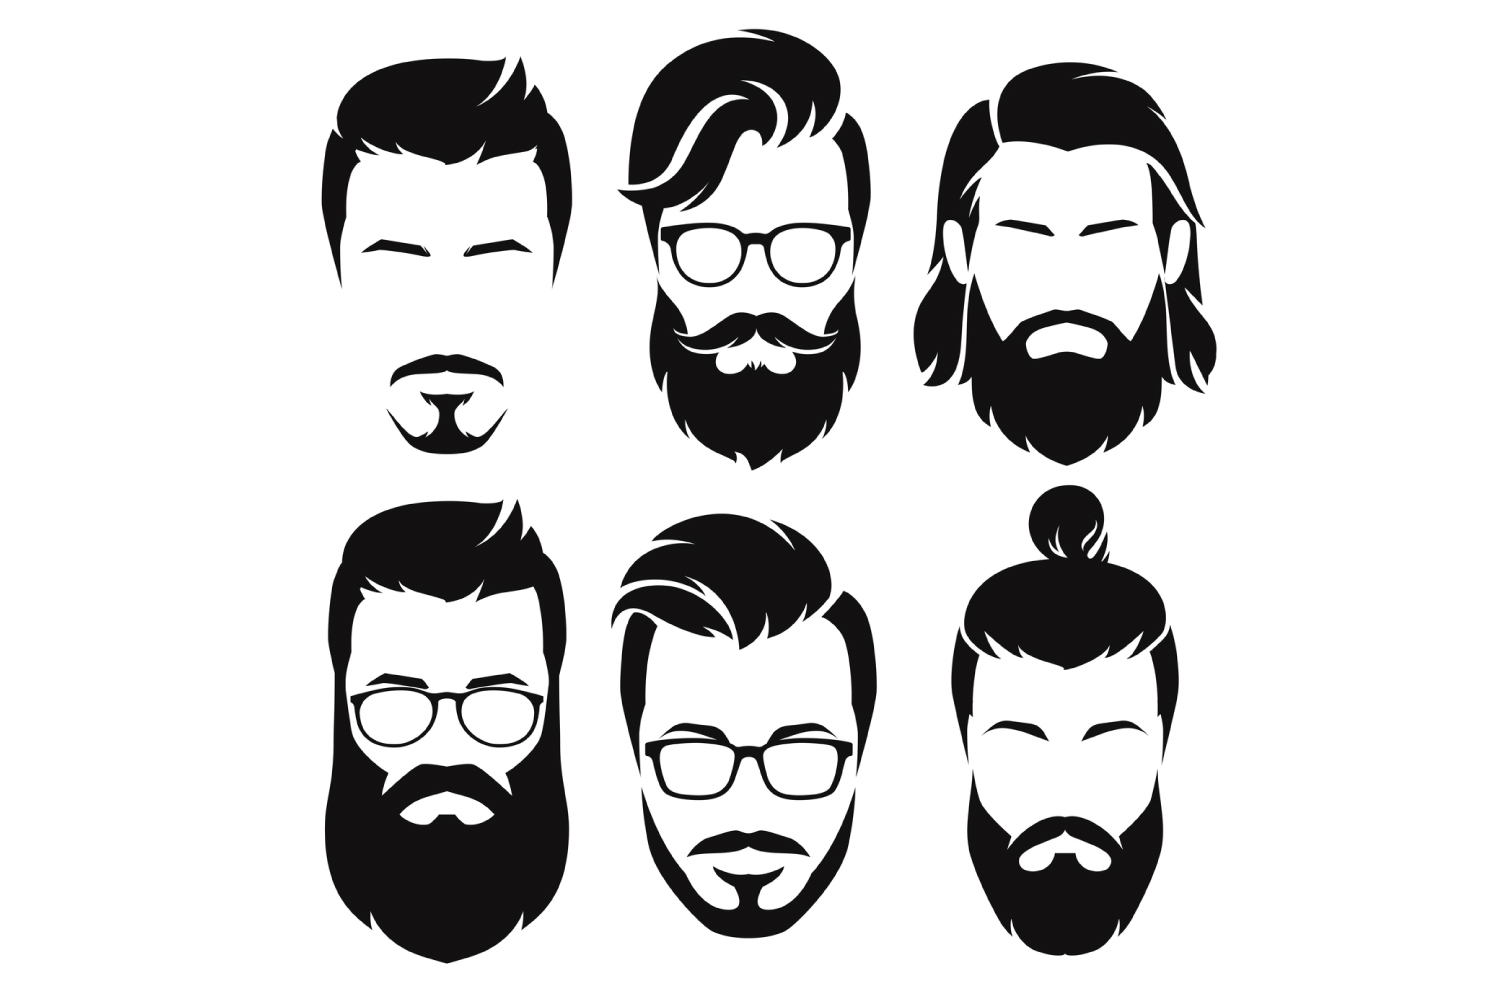 あなたに似合うデザインヒゲ 髭 が見つかる 顔タイプ別 要望別 部位別のデザイン集